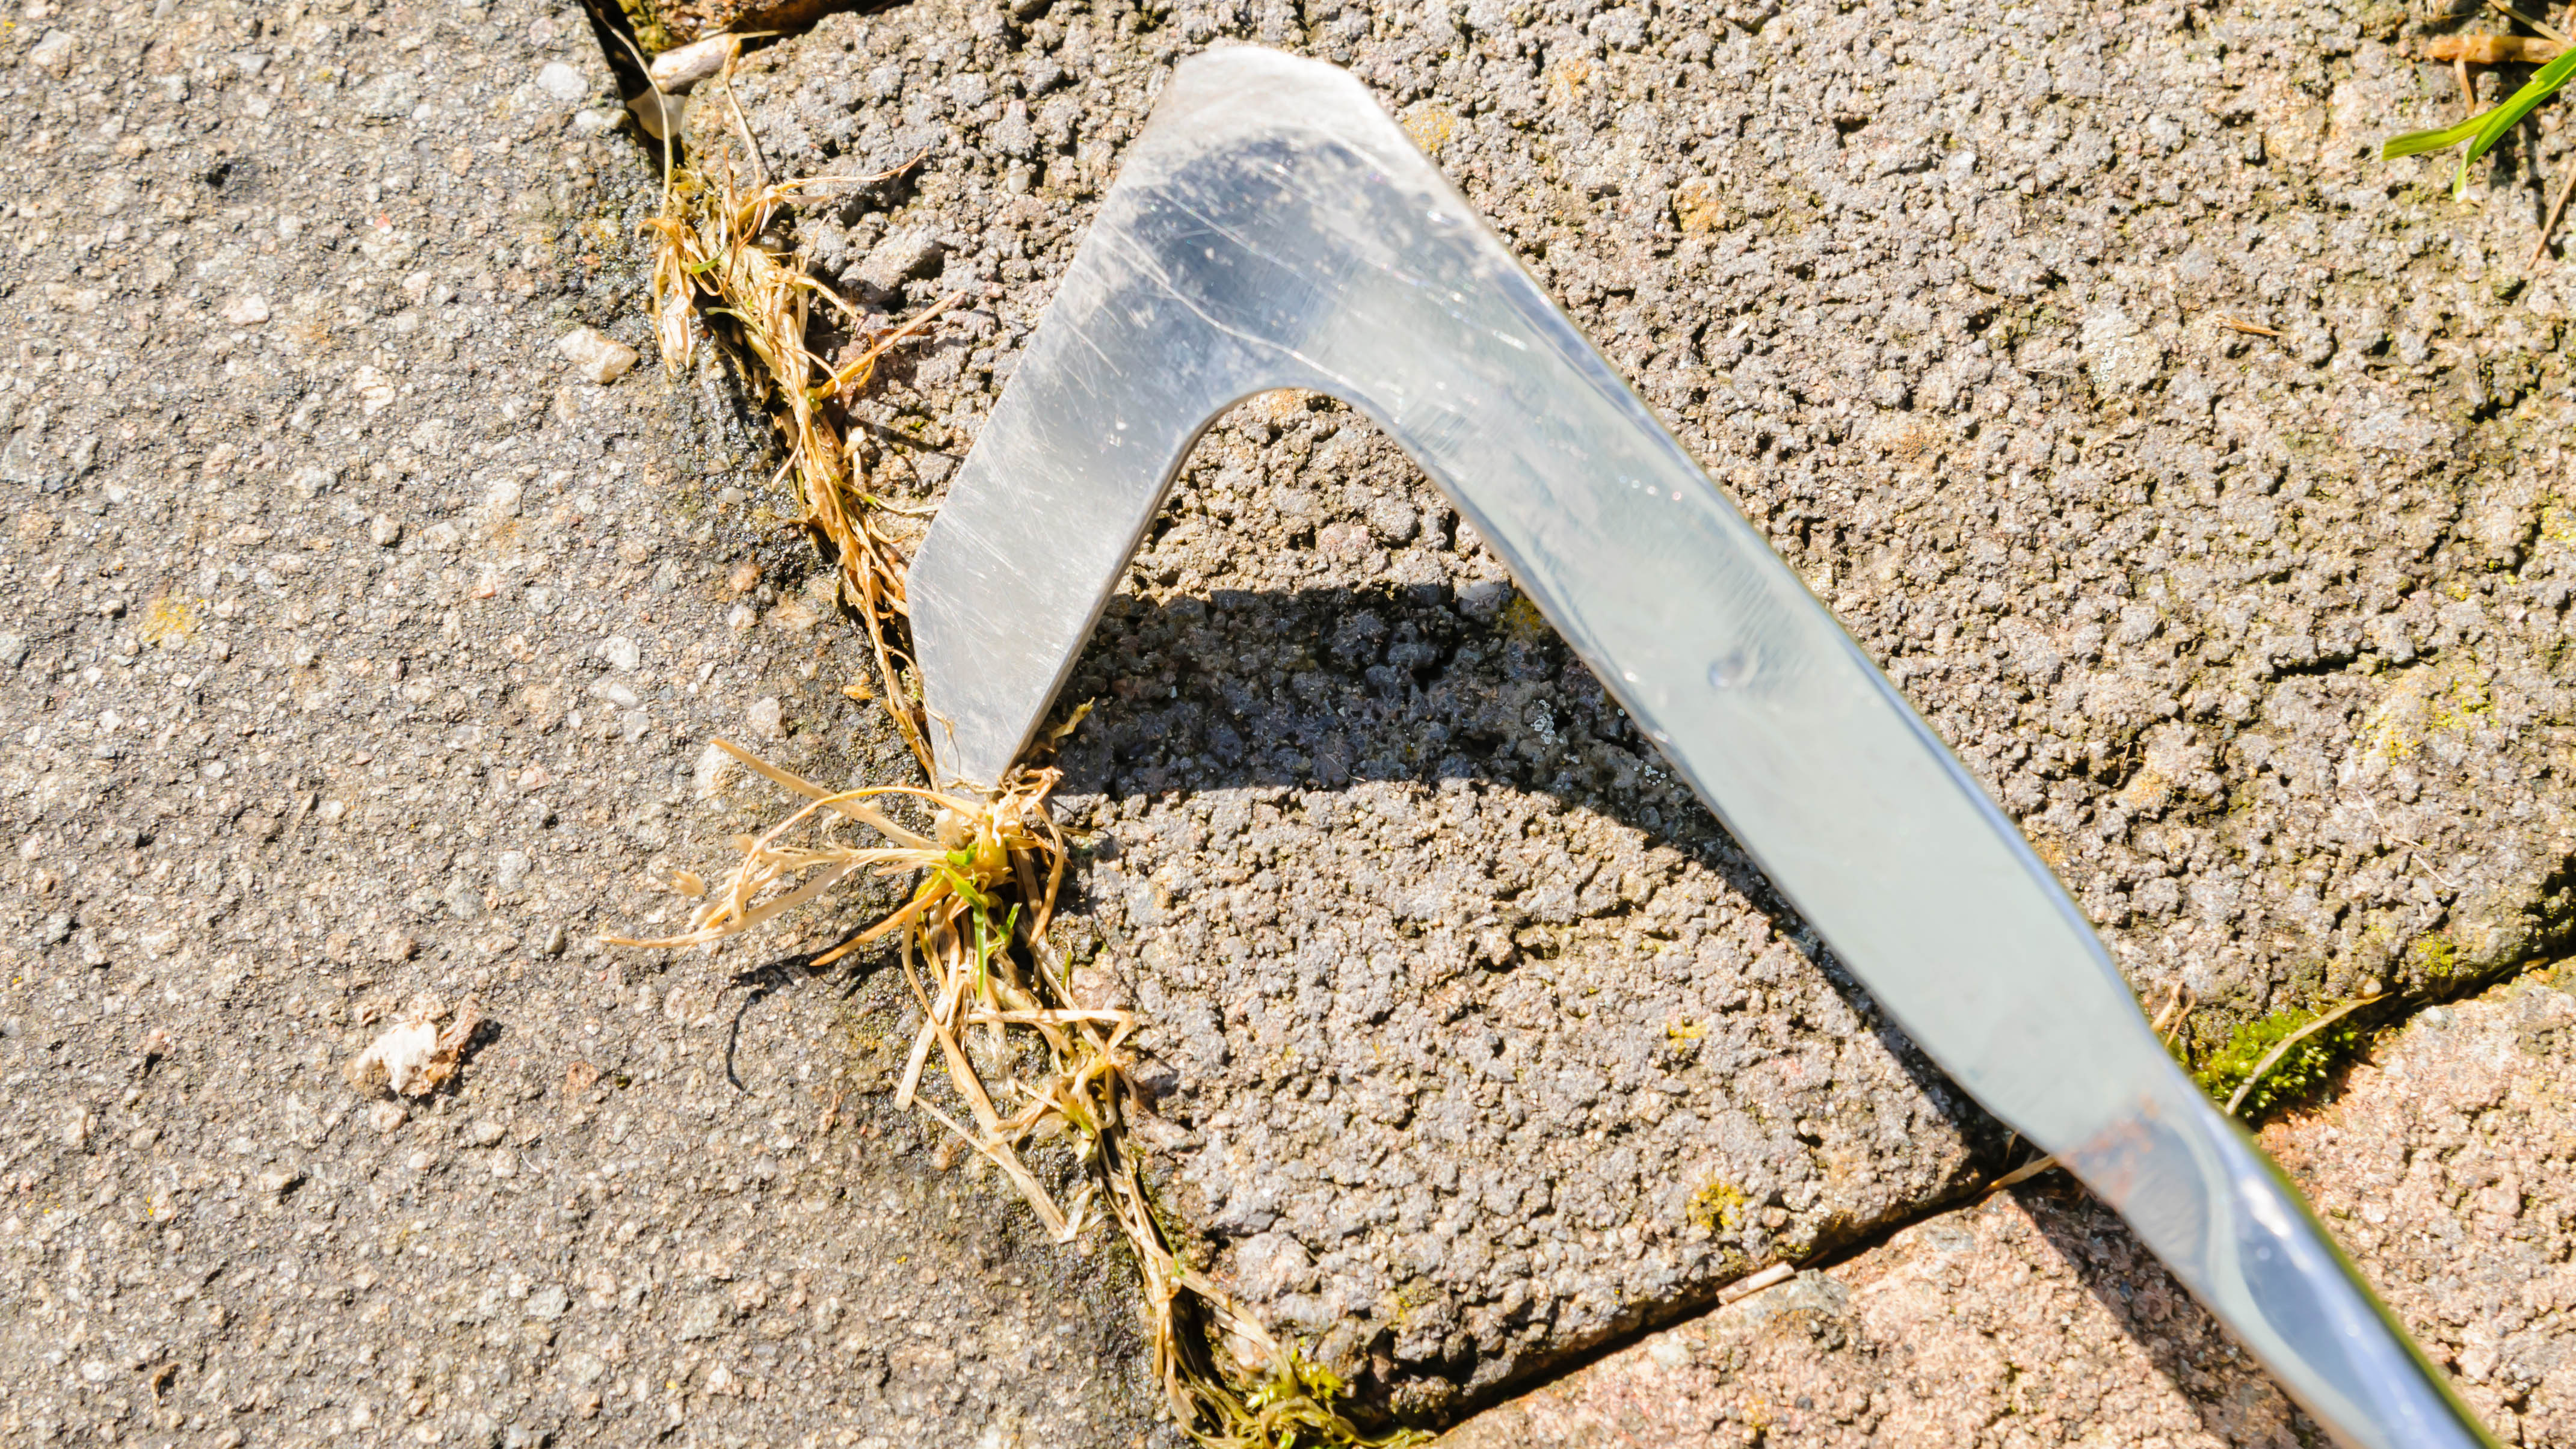 Использование тротуарного ножа для удаления сорняков